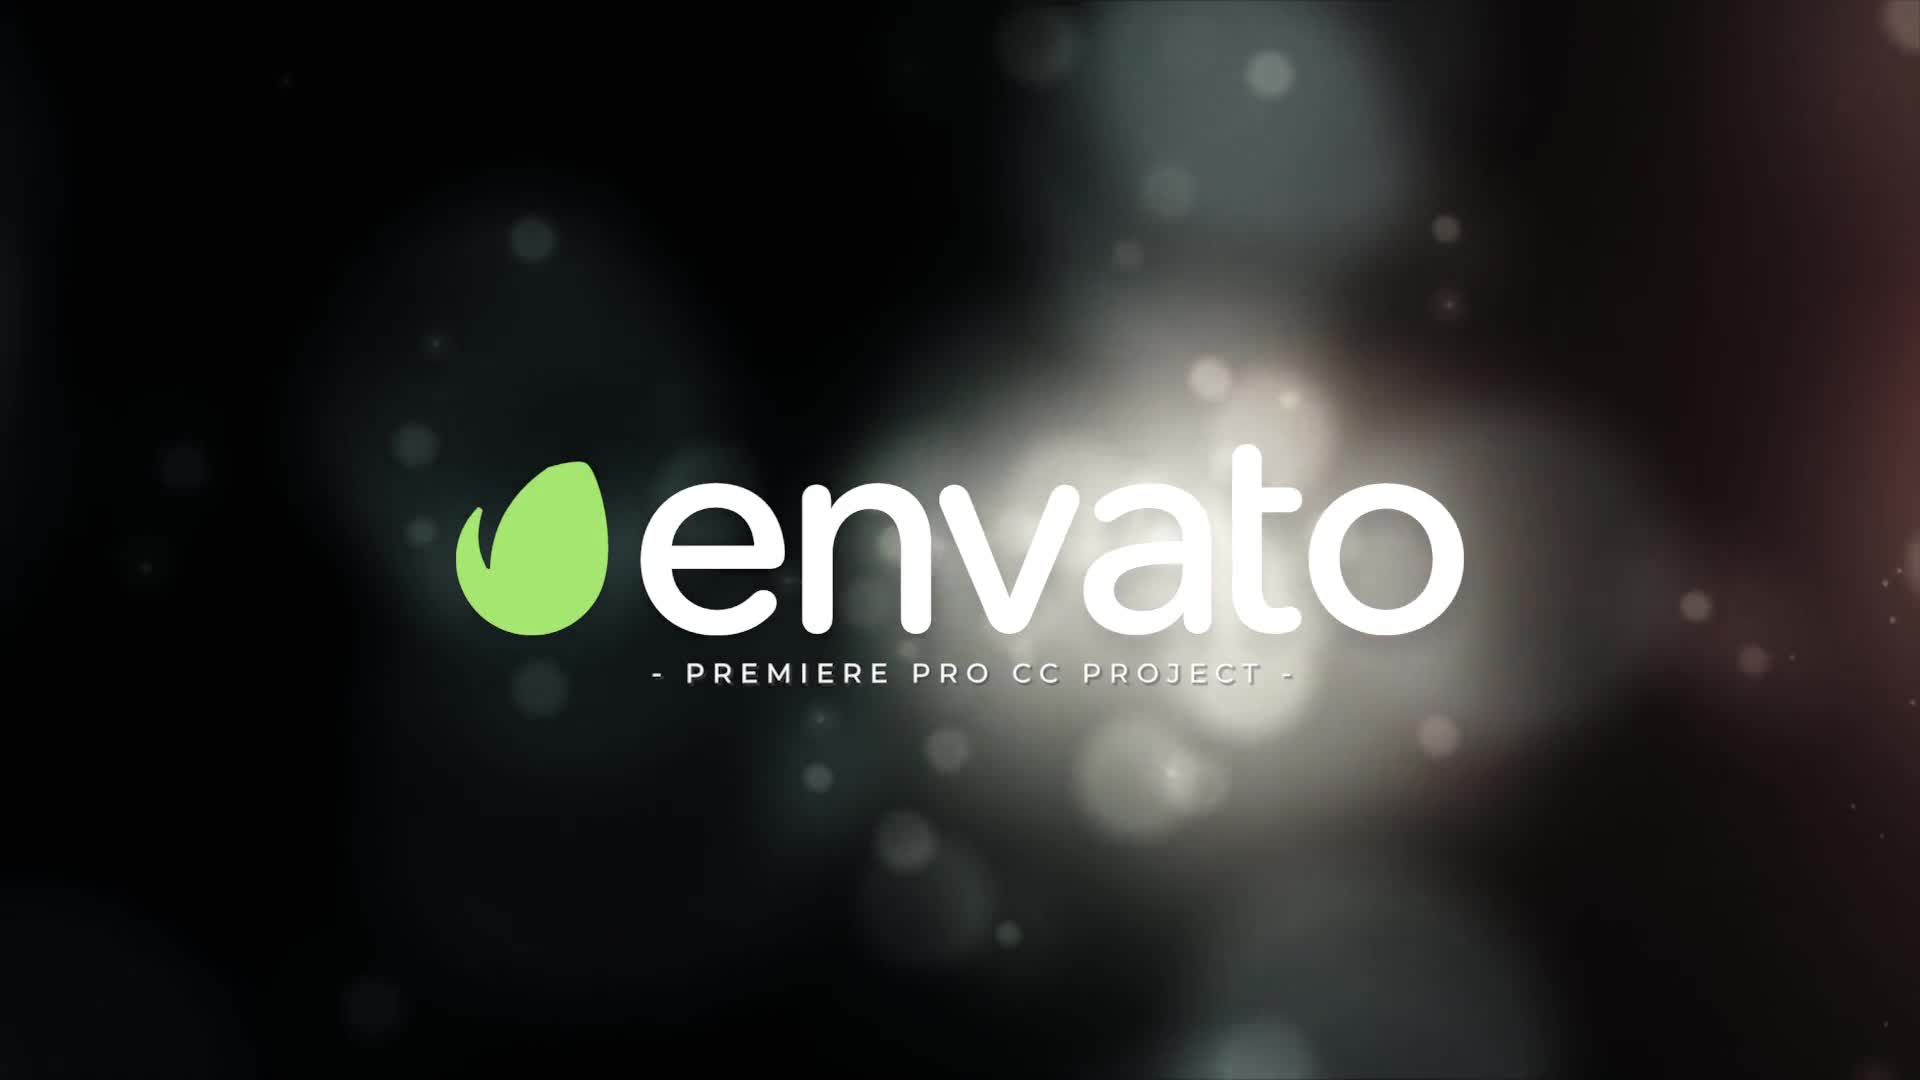 Cinematic Logo Intro For Premiere Pro - Download Videohive 23020888